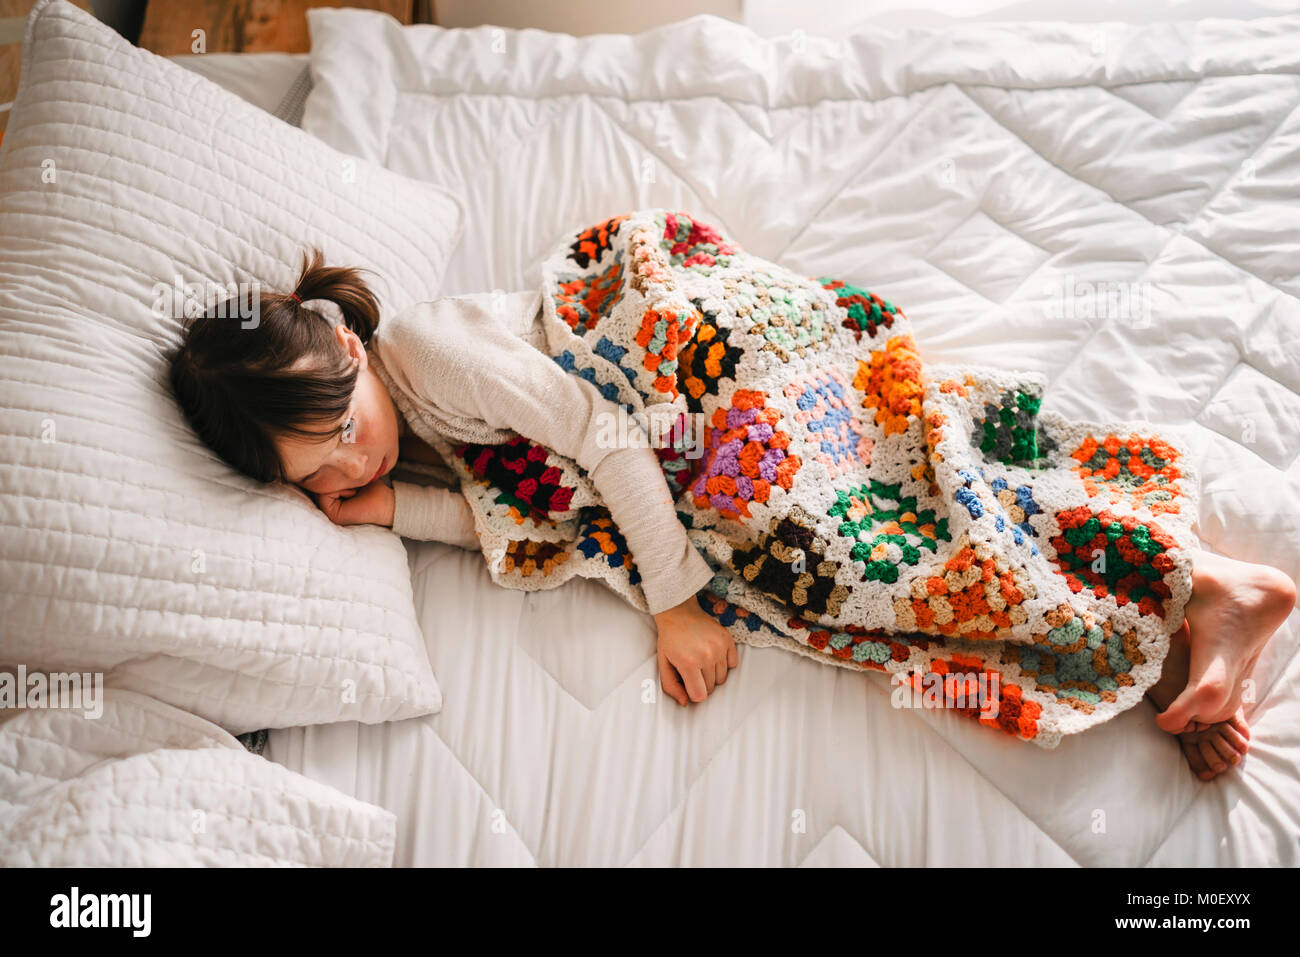 Mädchen liegt im Bett mit einem nap Stockfotografie - Alamy